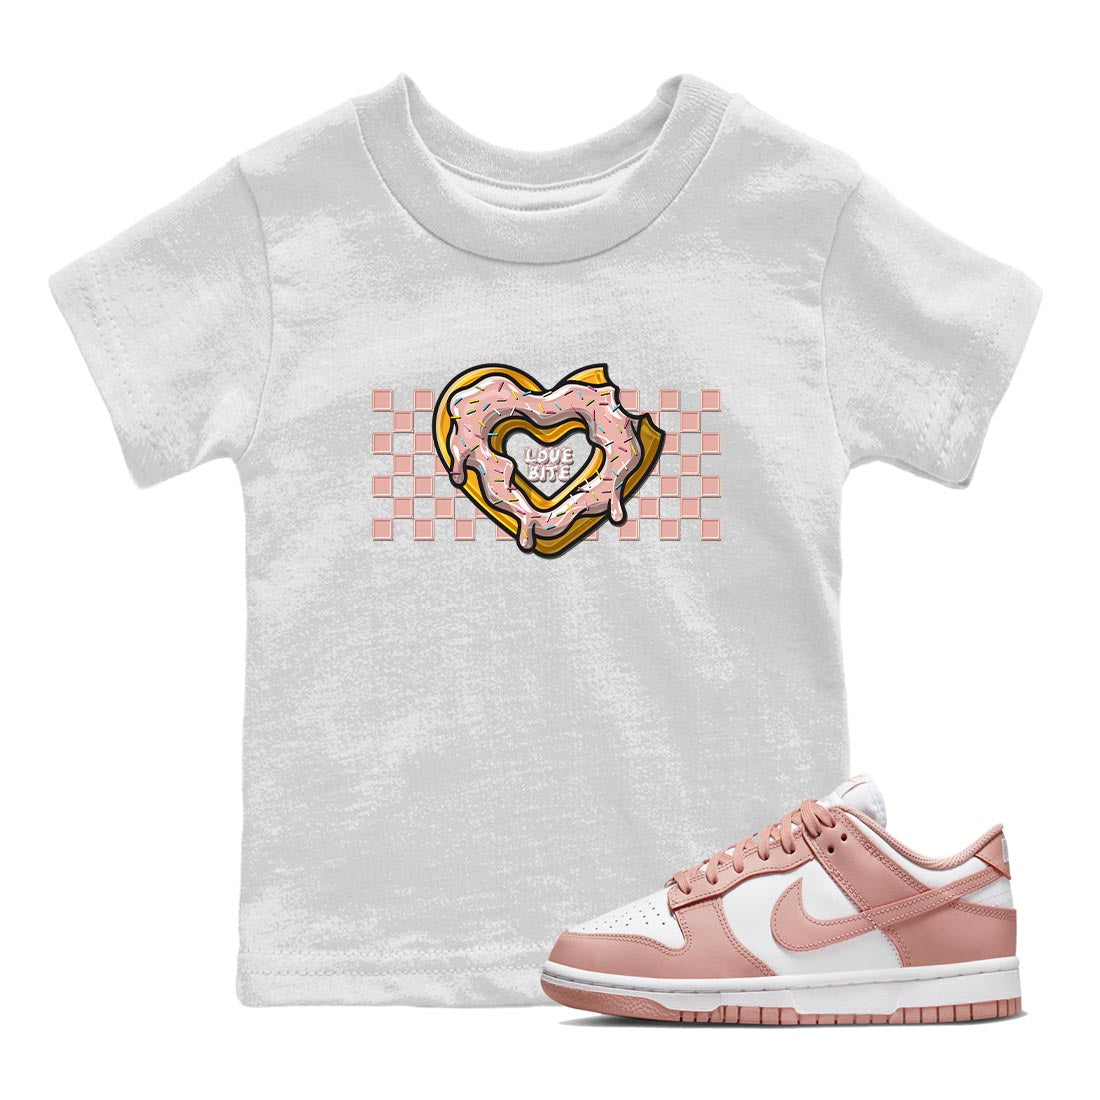 Nike Dunks Low Rose Whisper shirt to match jordans Love Bite Streetwear Sneaker Shirt Nike Dunk Rose Whisper Drip Gear Zone Sneaker Matching Clothing Baby Toddler White 1 T-Shirt